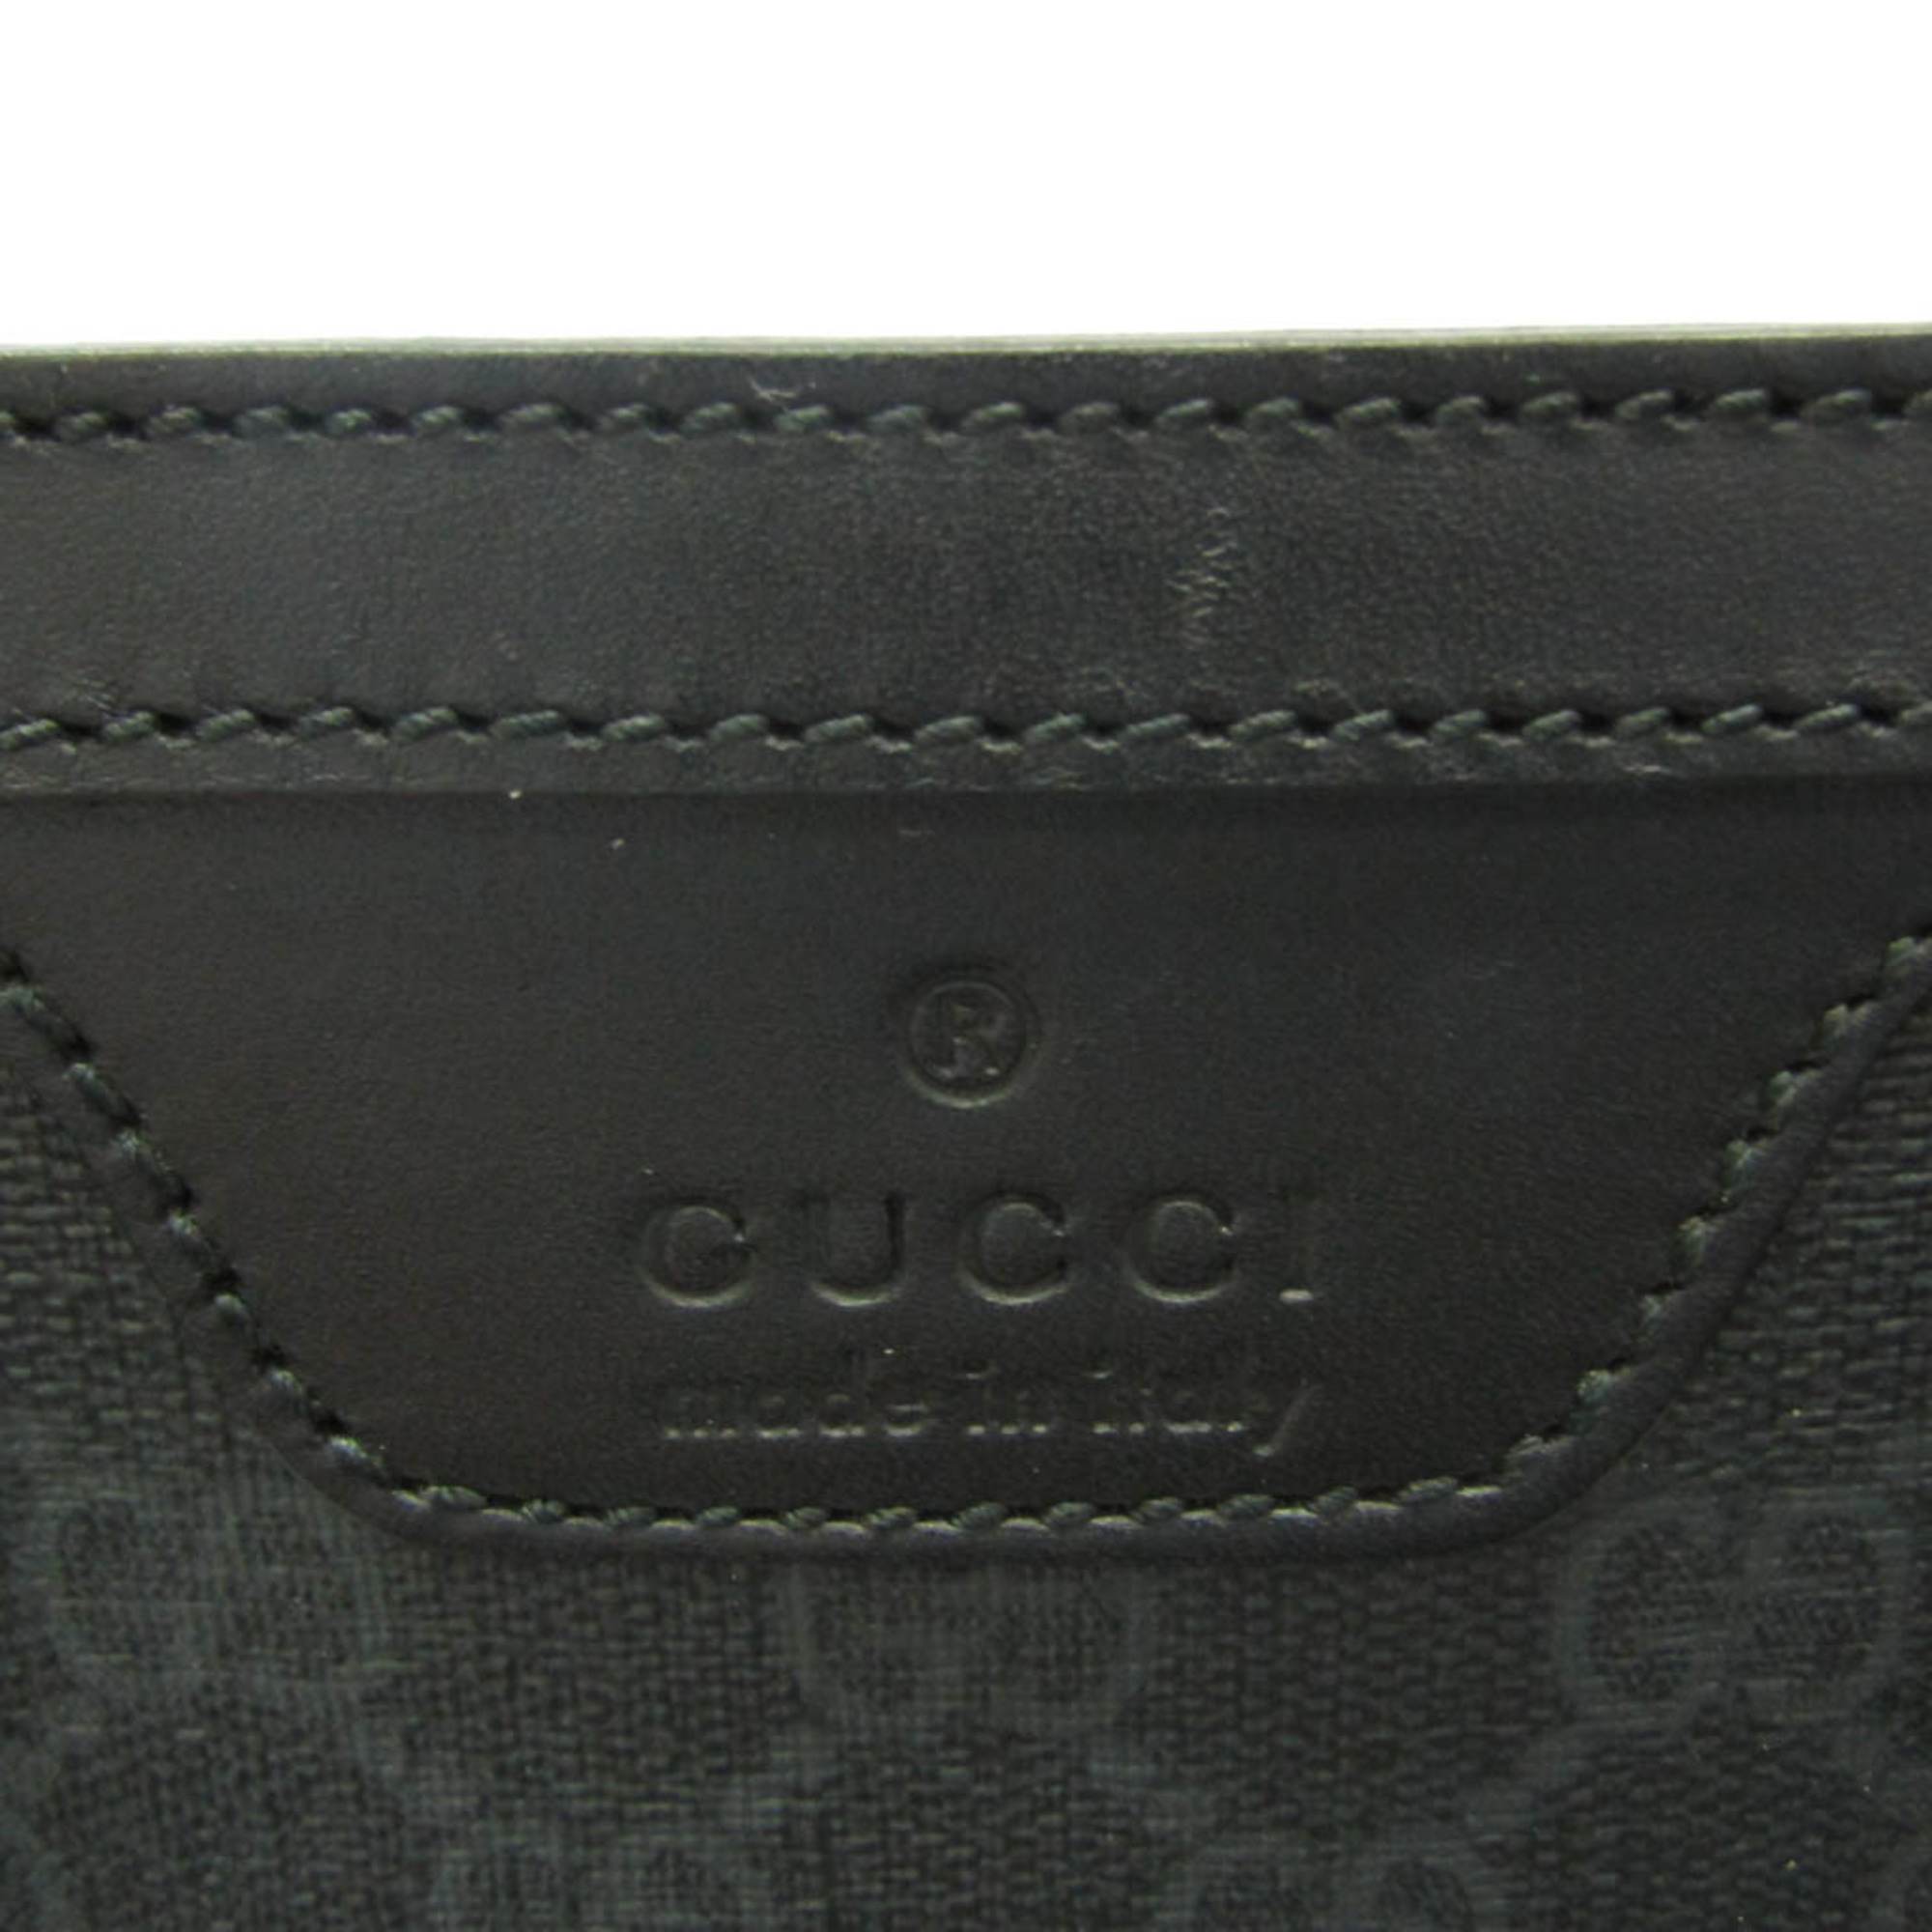 グッチ(Gucci) GGスプリーム 322072 メンズ コーティングキャンバス ハンドバッグ,トートバッグ ブラック,ダークグレー